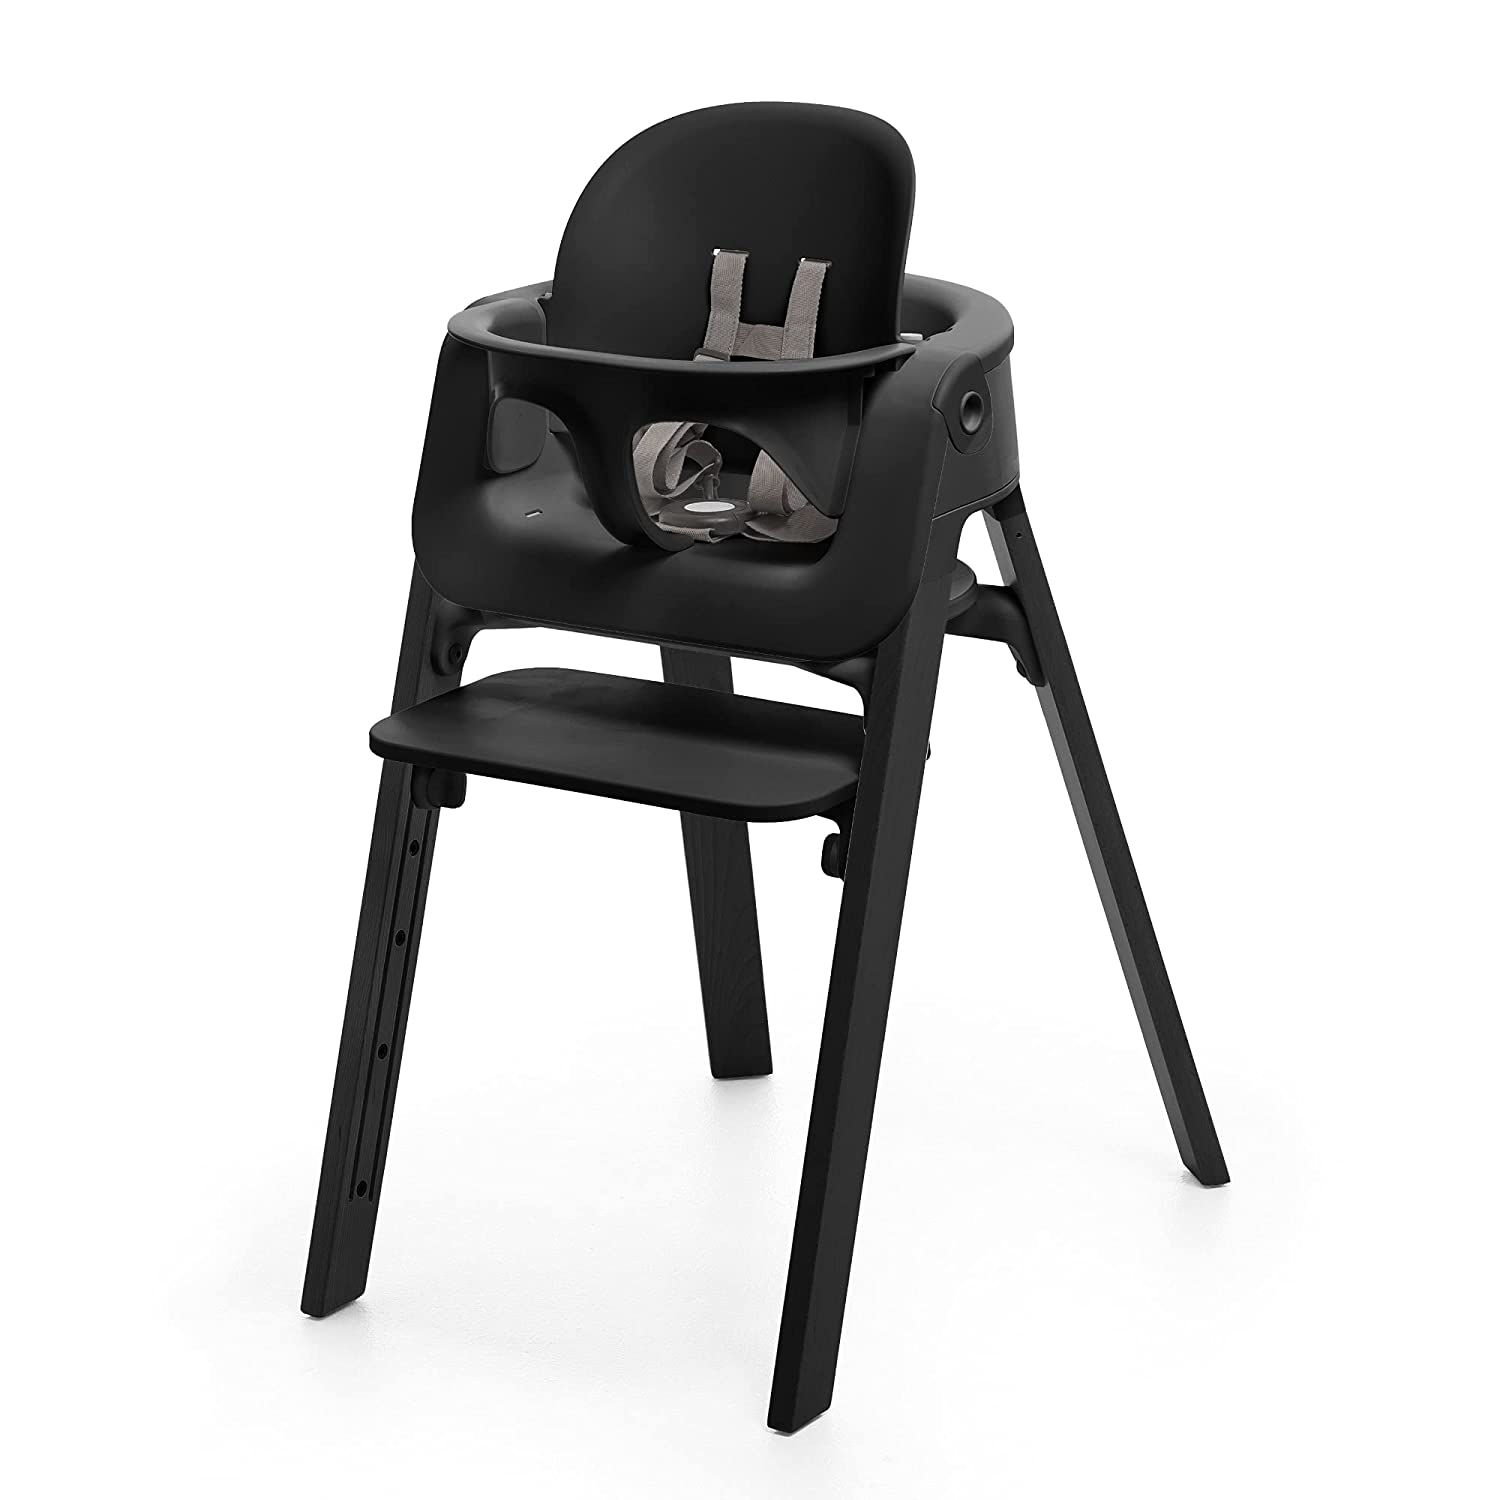 החשיבות של עיצוב ארגונומי בכיסאות גבוהים: תמיכה ביציבה נכונה לתינוקות